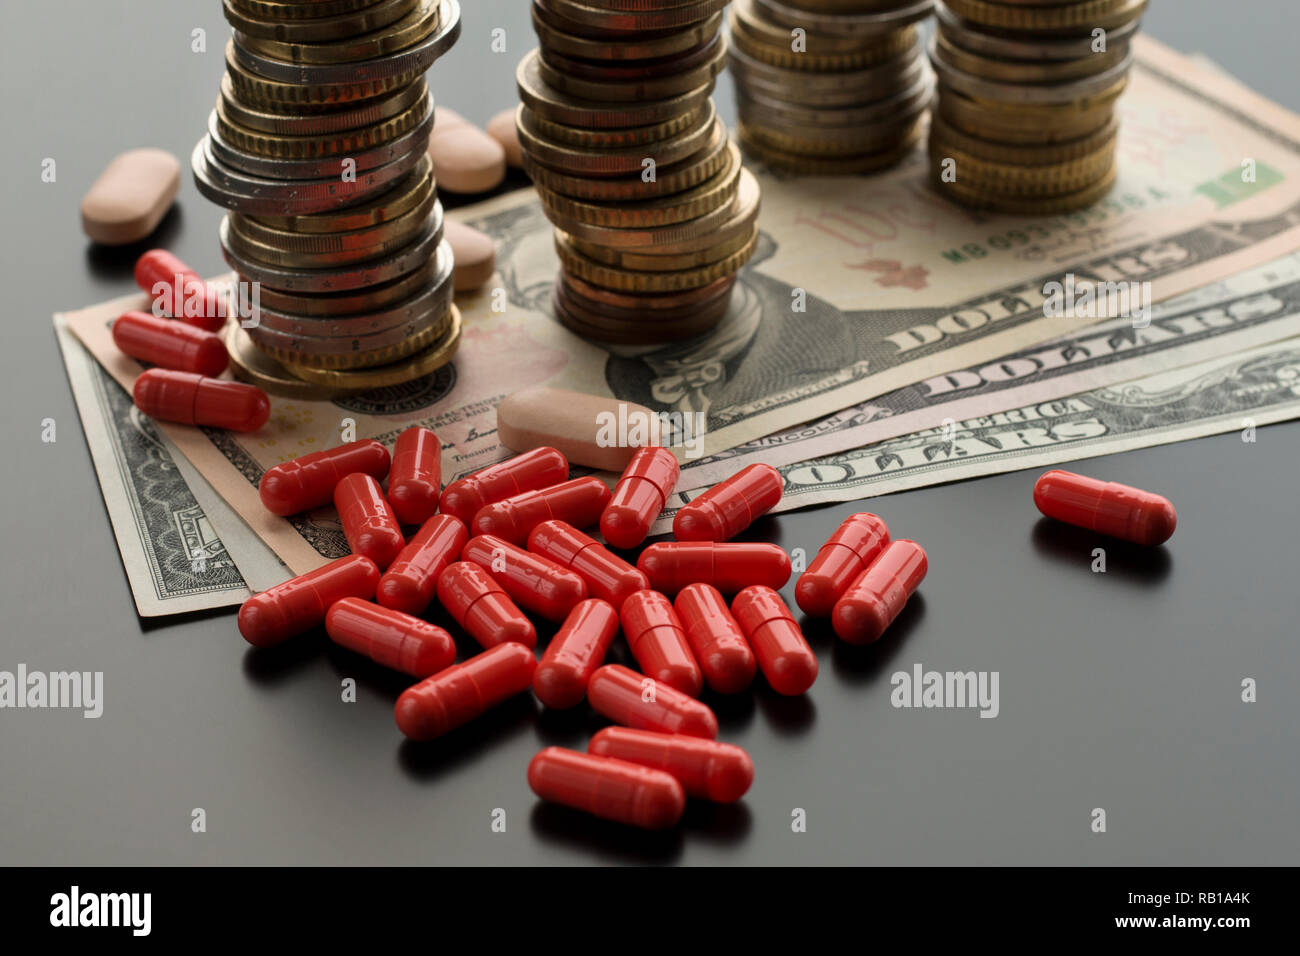 Red pillole o capsule contro le fatture del dollaro e pile di monete su sfondo scuro. Concetto di cure costose Foto Stock